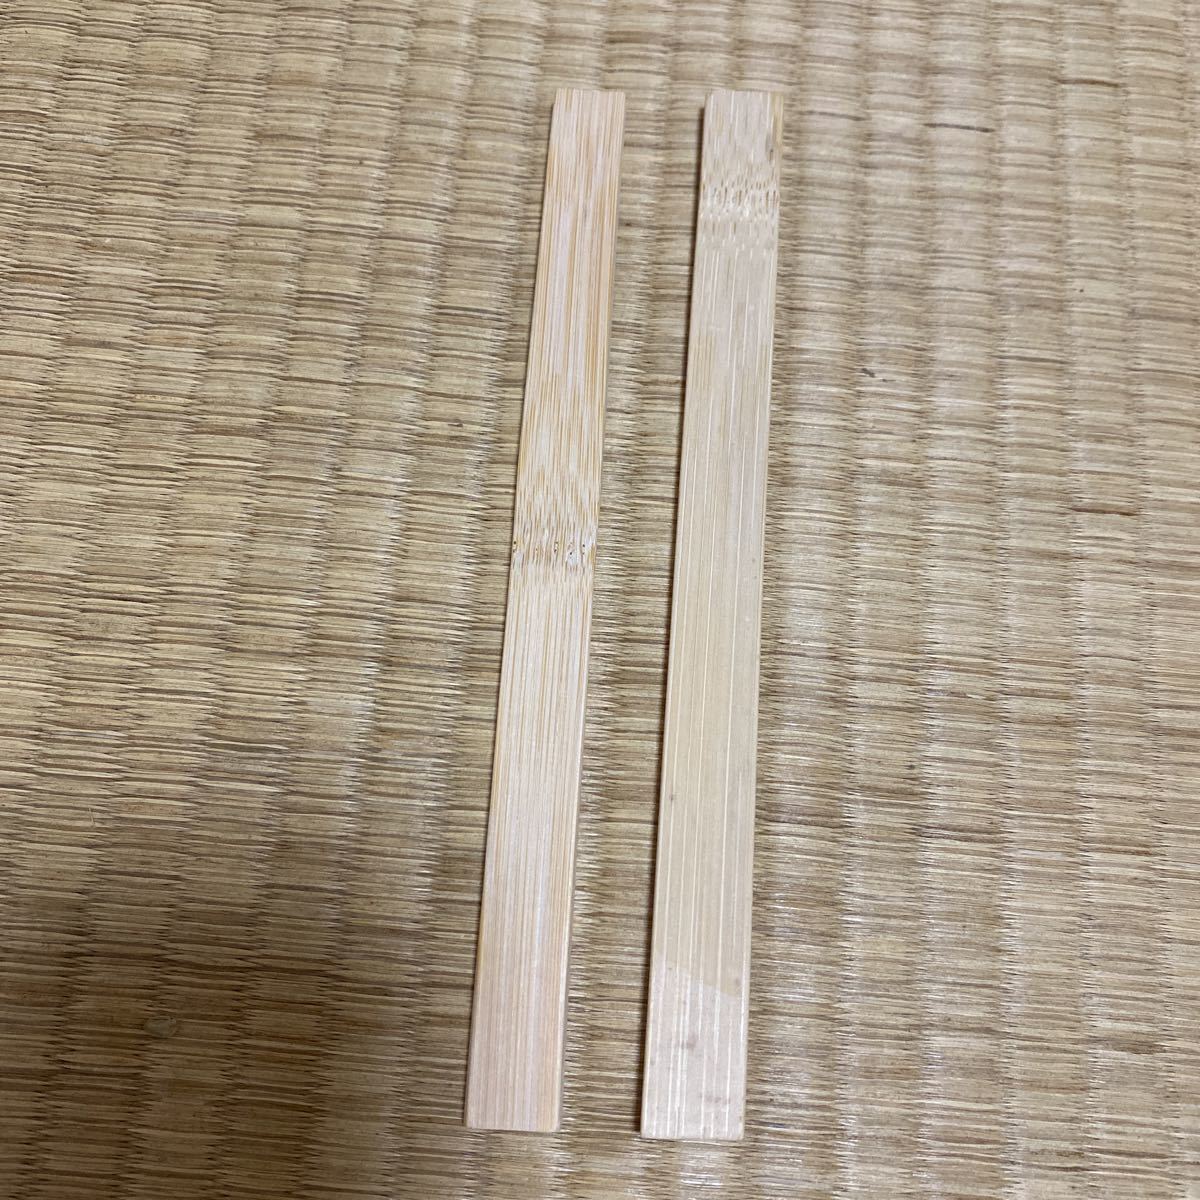 鱒寿司 ます寿司 部品 棒 木 DIY 工作 材料_画像1